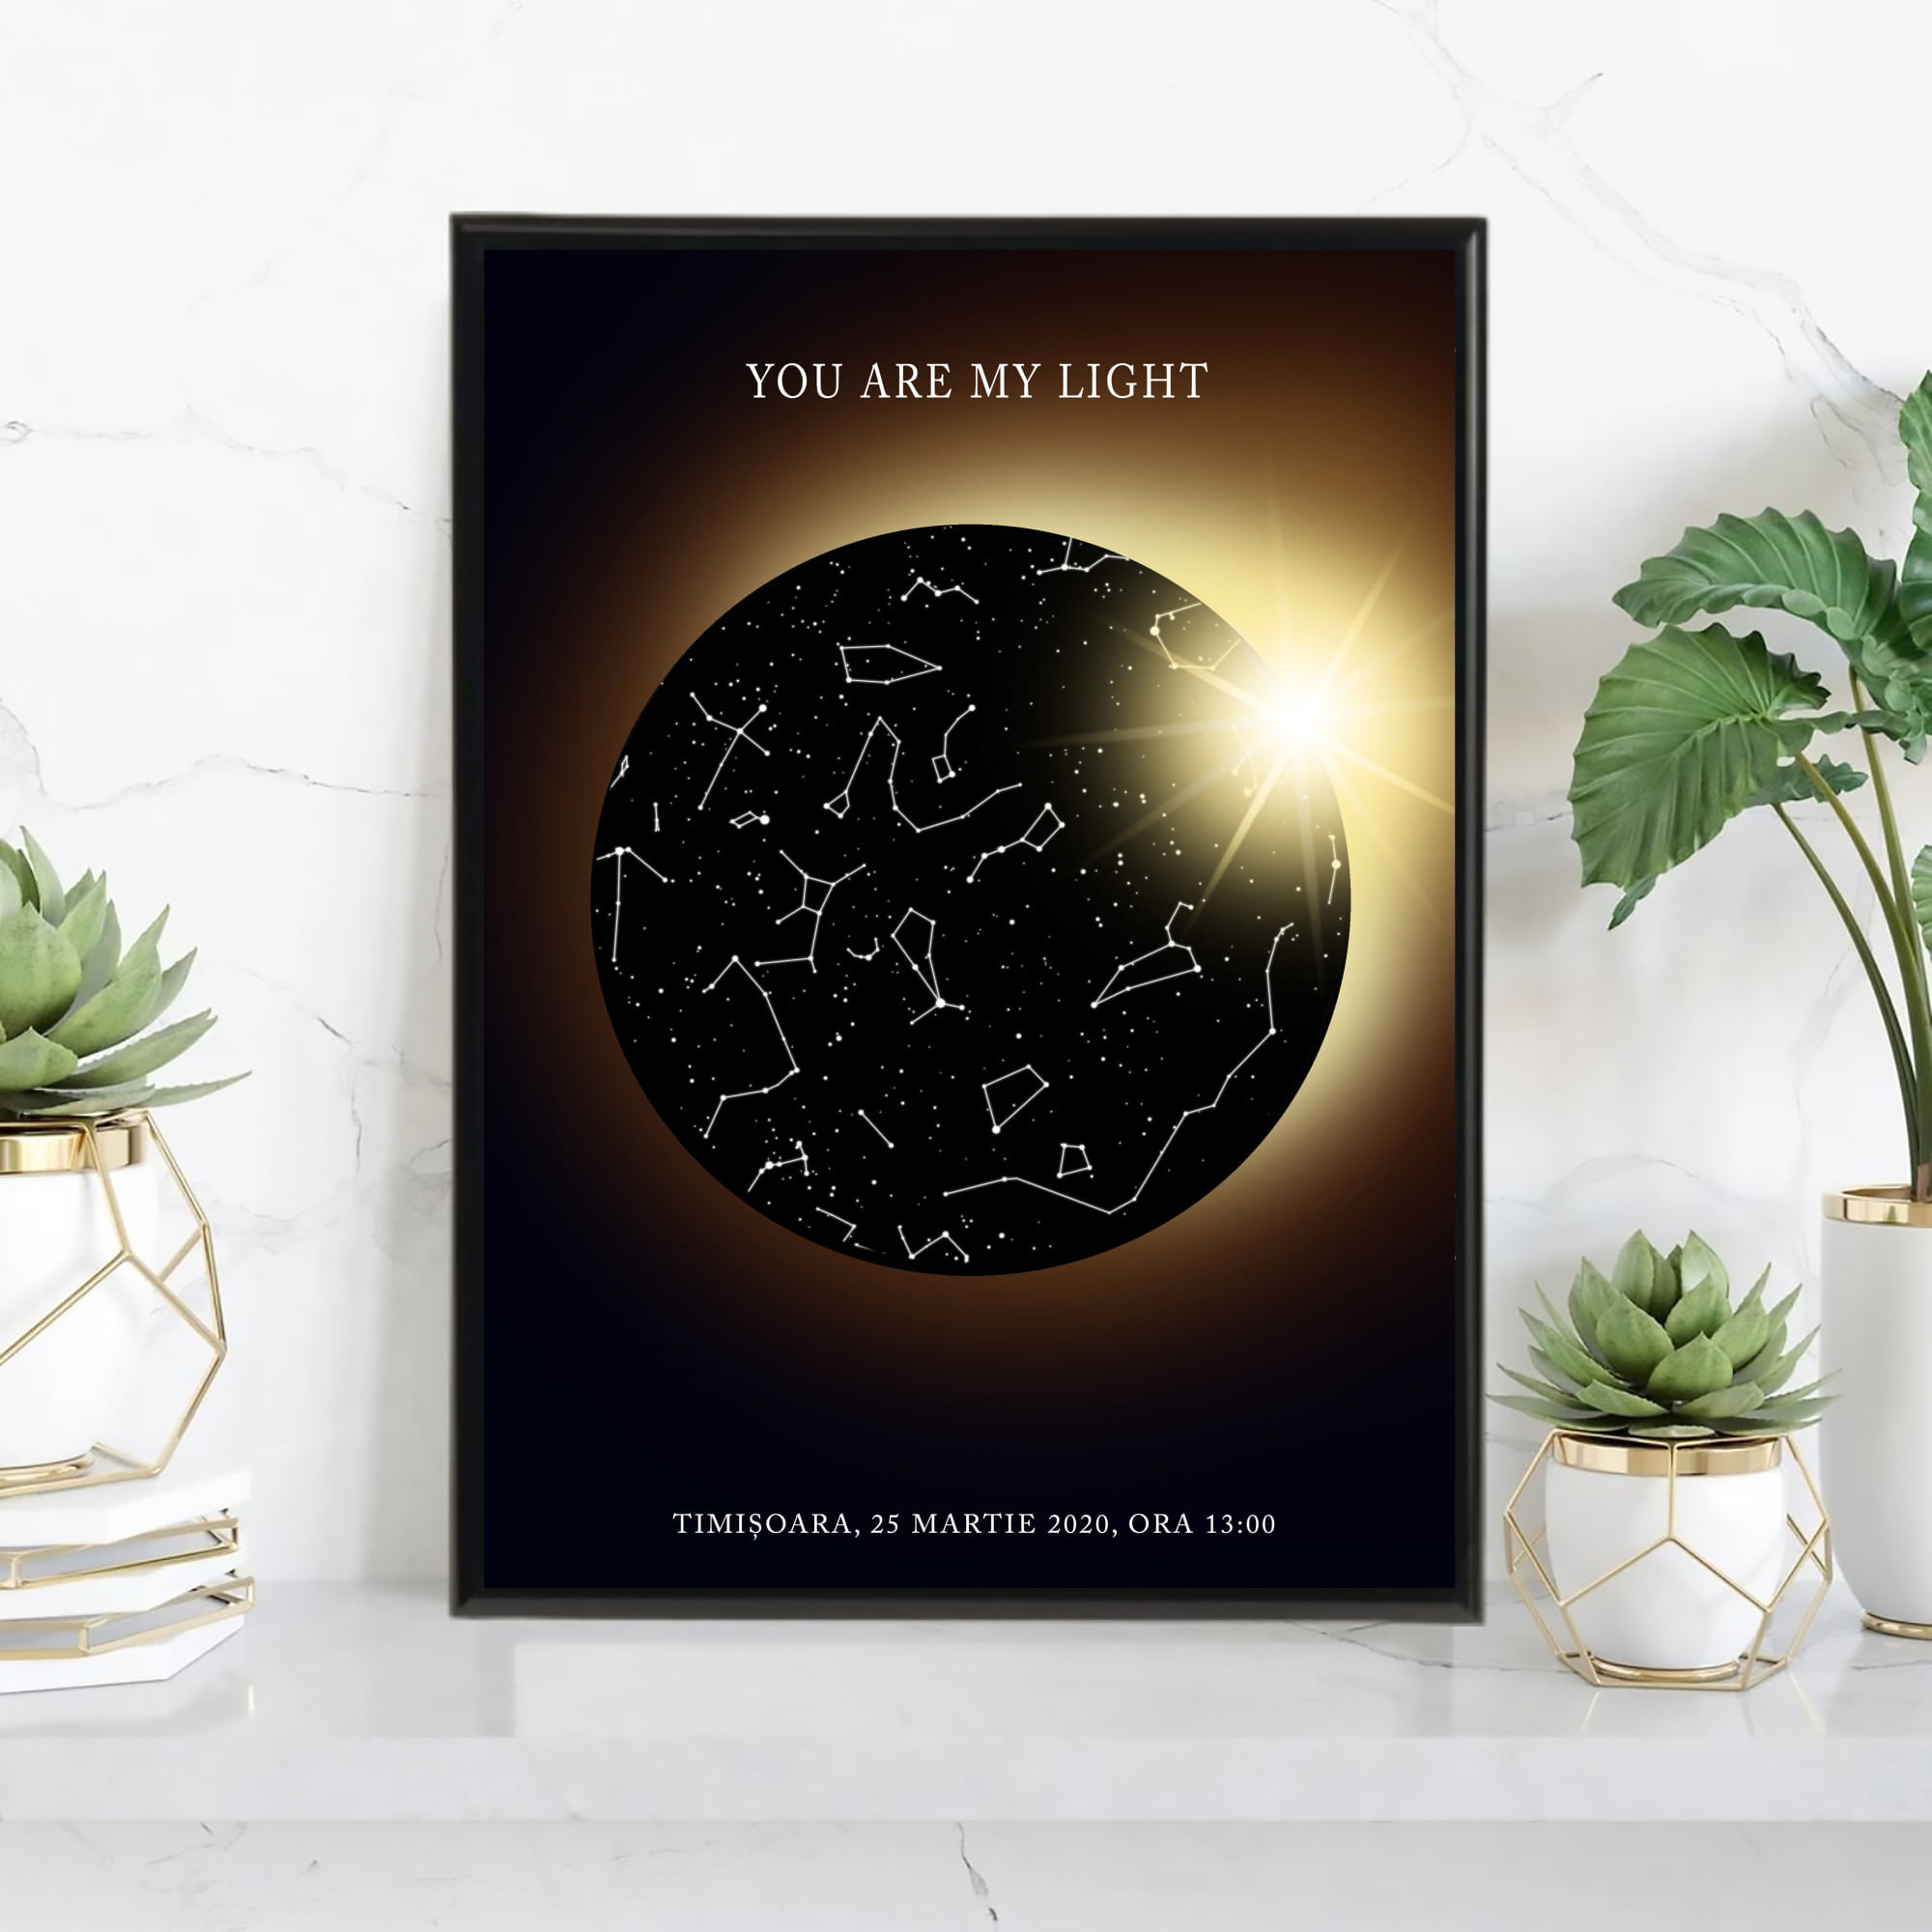 Tablou personalizat cu harta stelelor, model lumina, rama negru, 20 x 30 cm